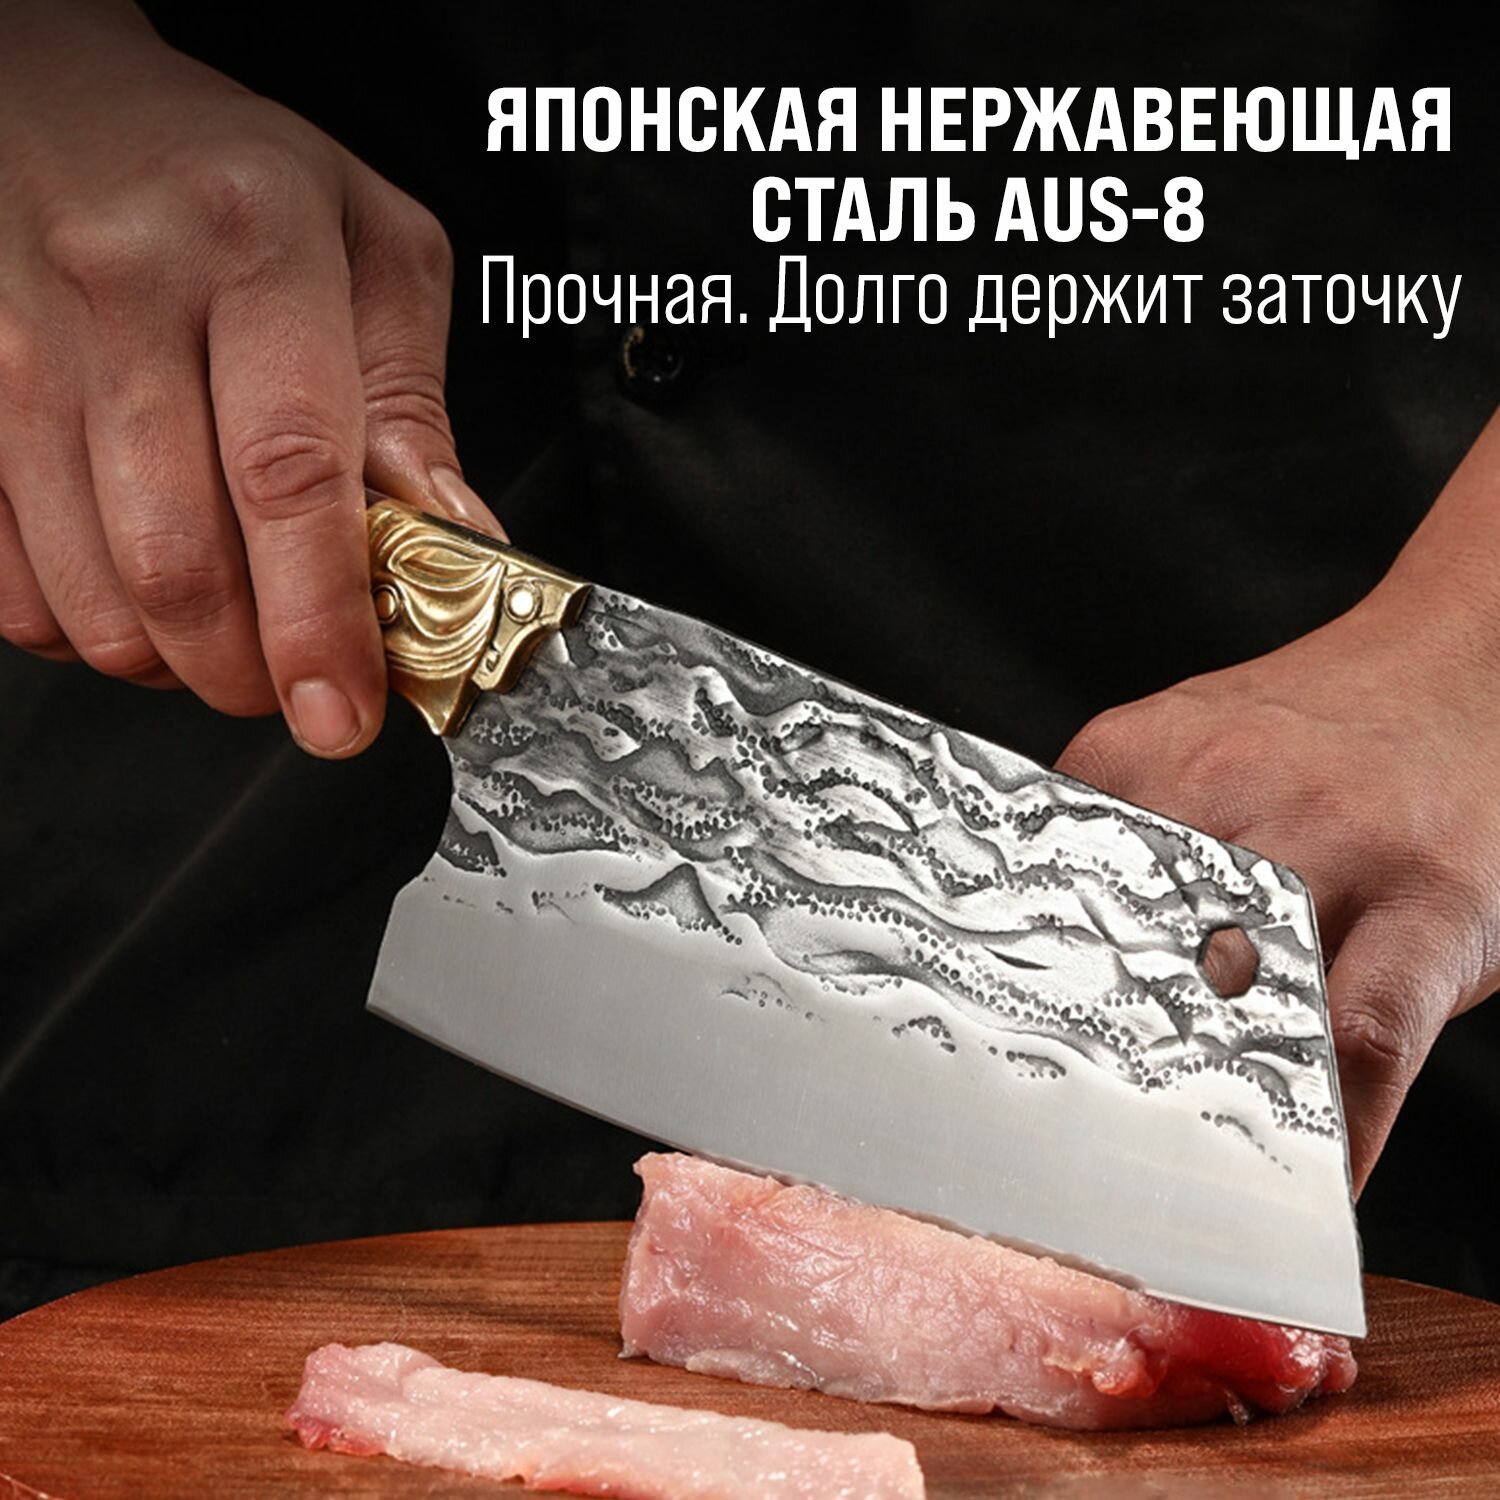 Японский кухонный нож - топорик Kimatsugi Fujin Pro / Нож для разделки мяса / Японская сталь AUS-8 / Длина лезвия 20 см